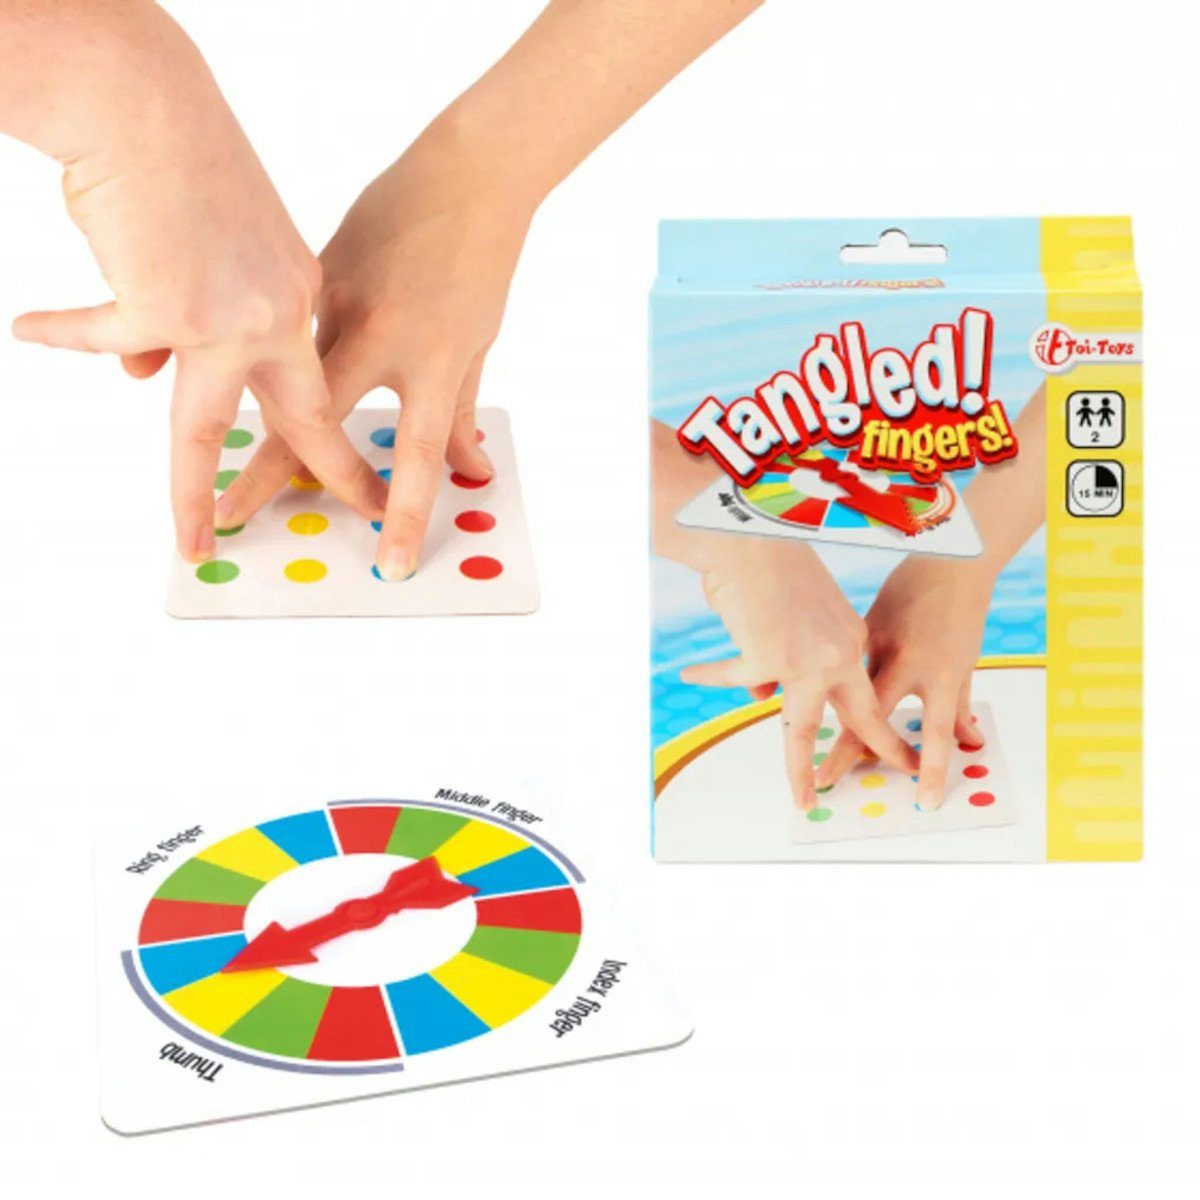 Toi-Toys Spiel, Tangled Fingers!, verschlungene Finger Partyspiel